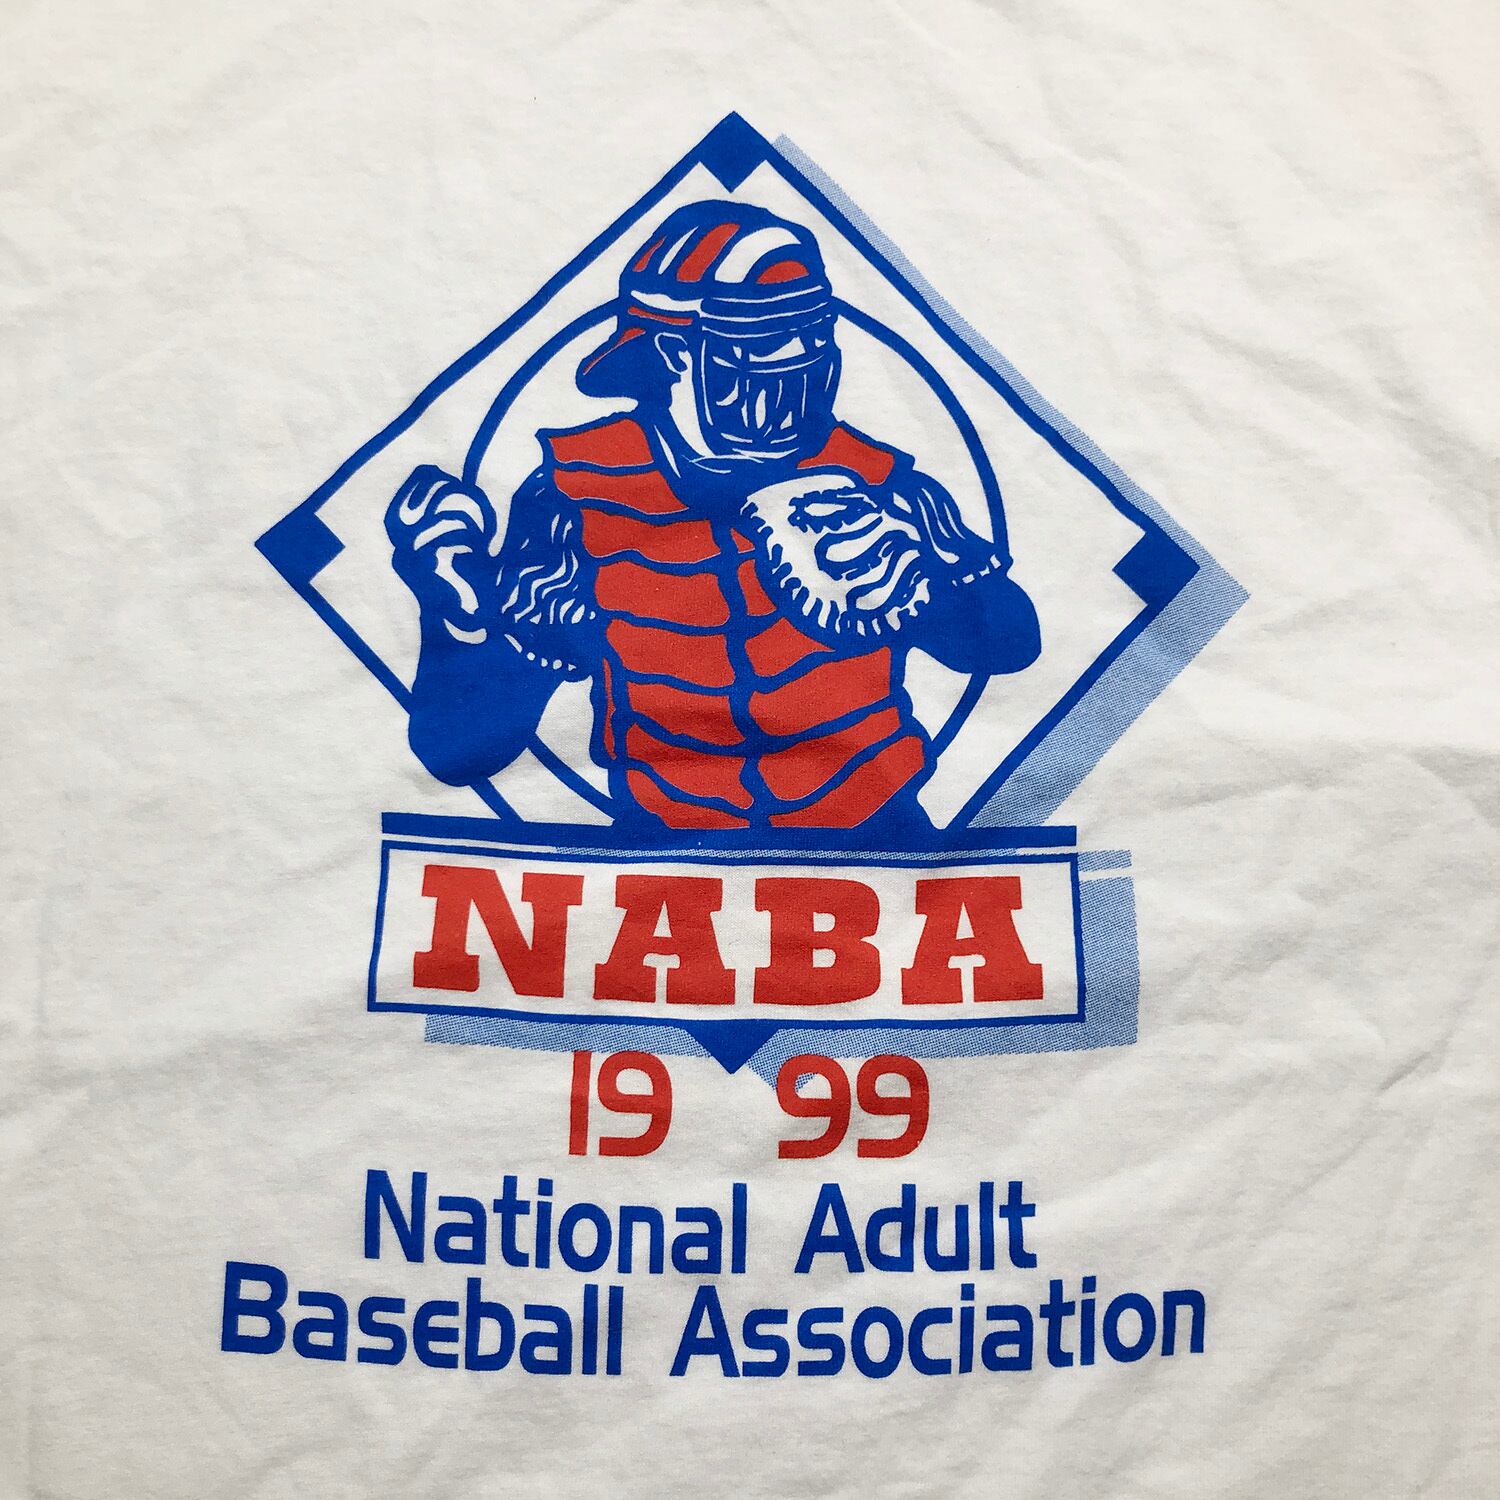 90S ヴィンテージ NABA ナショナルアダルトベースボールアソシエーション 1999年 野球 Tシャツ メンズXL 大きいサイズ 古着